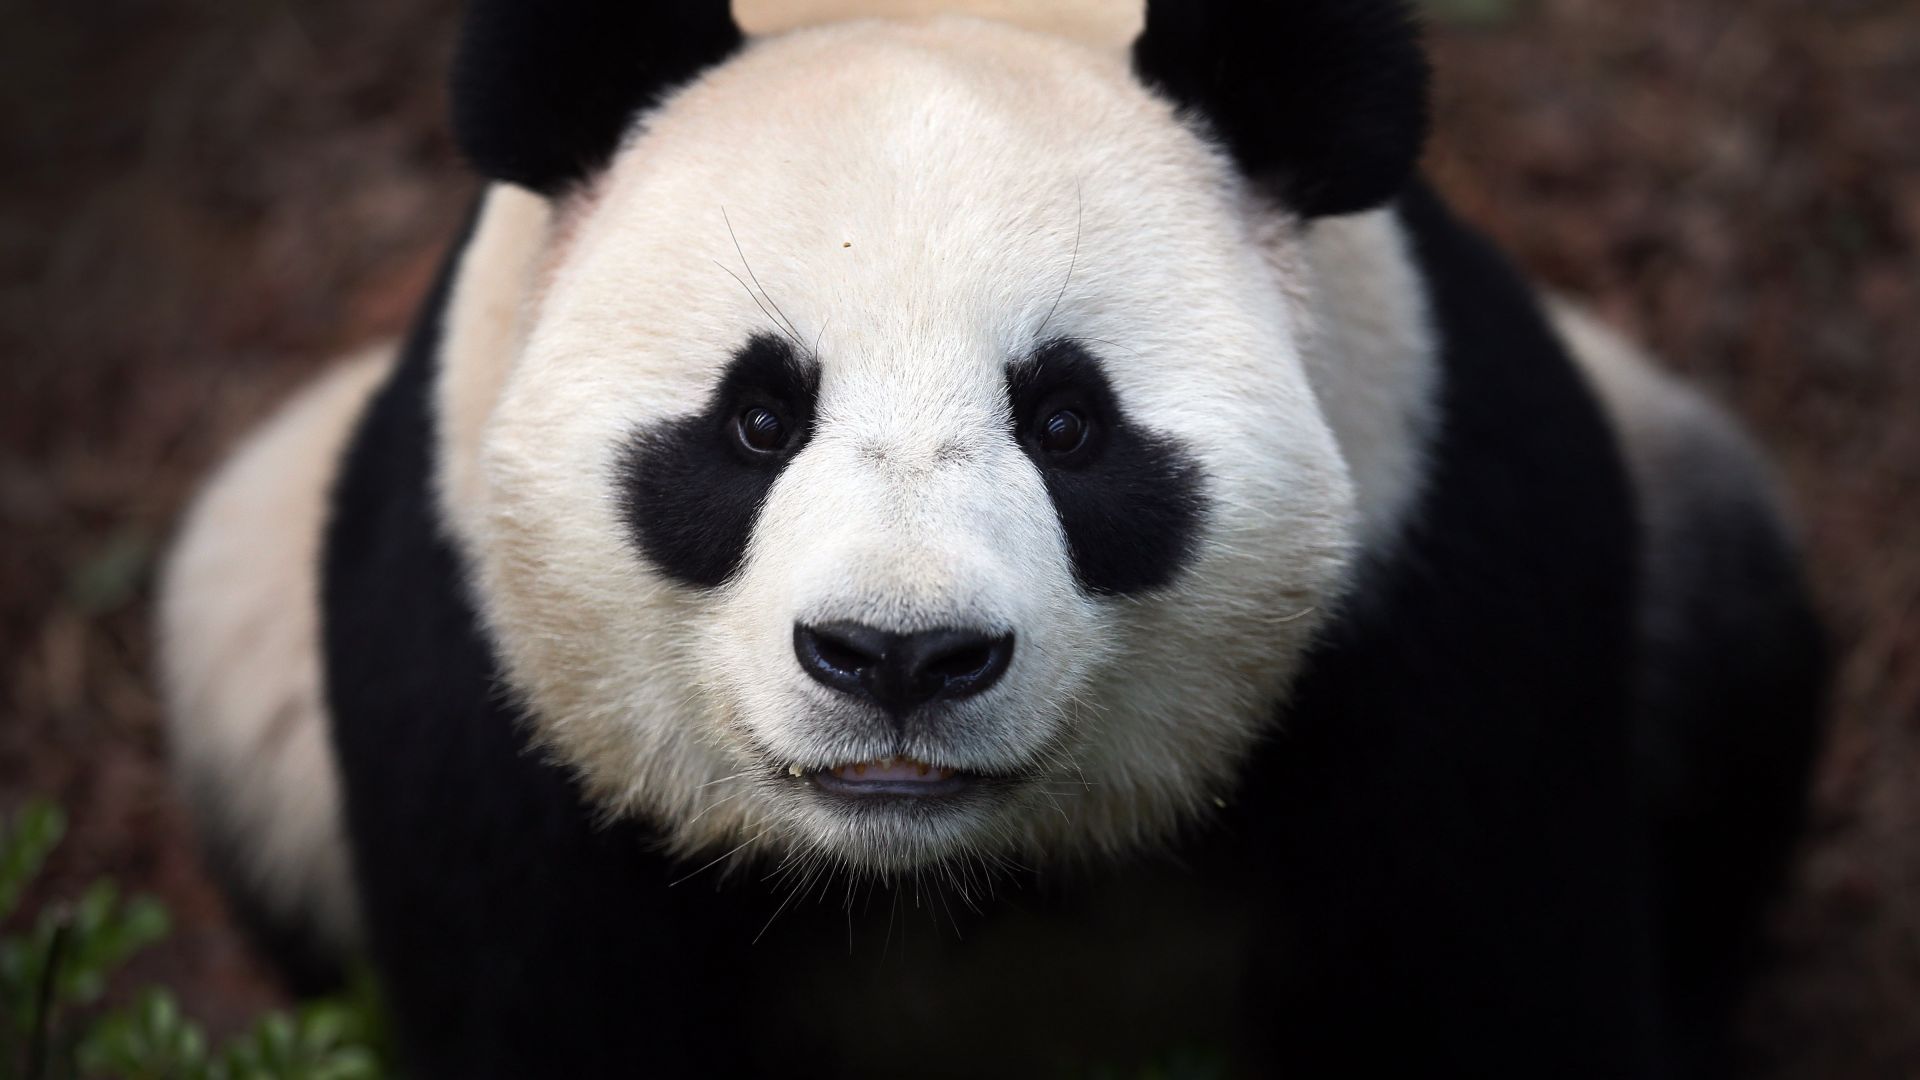 Cute Panda Wallpaper HD 4K  Google Play वरल अपस